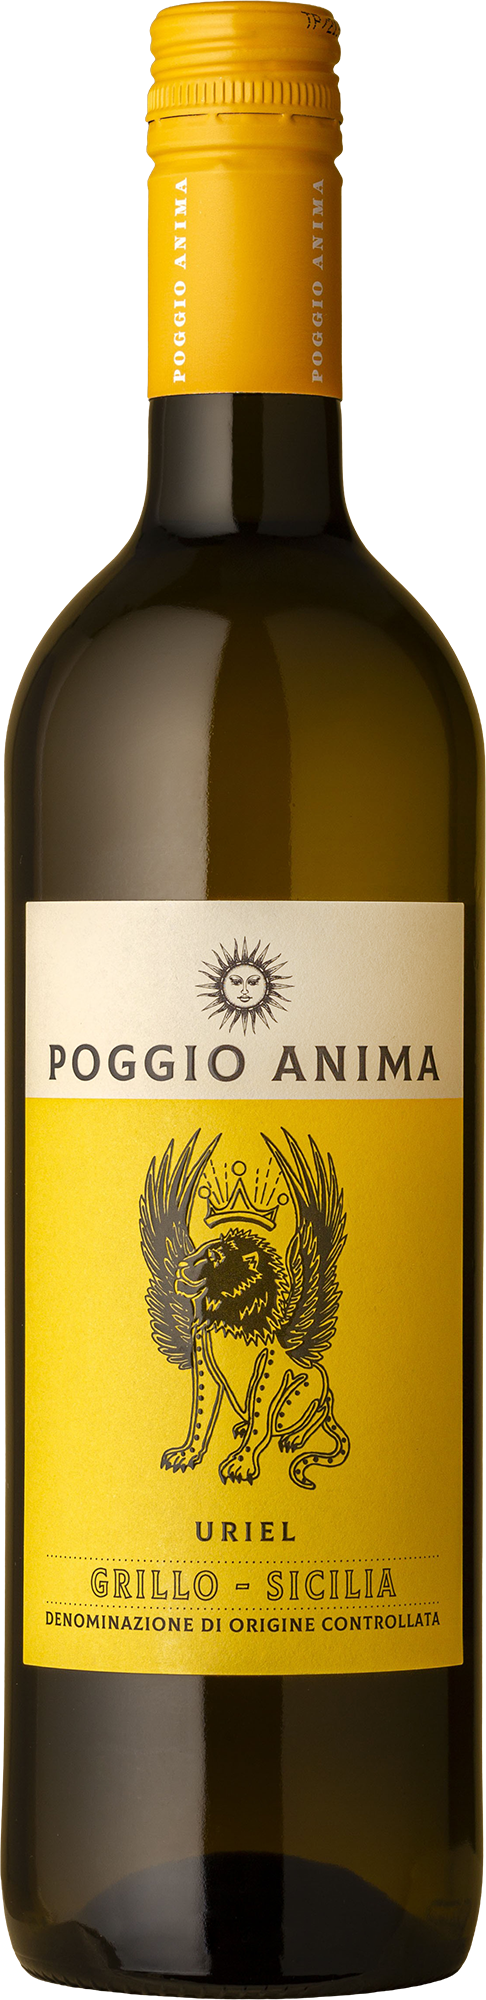 Poggio Anima - Sicilia Grillo 2021 White Wine